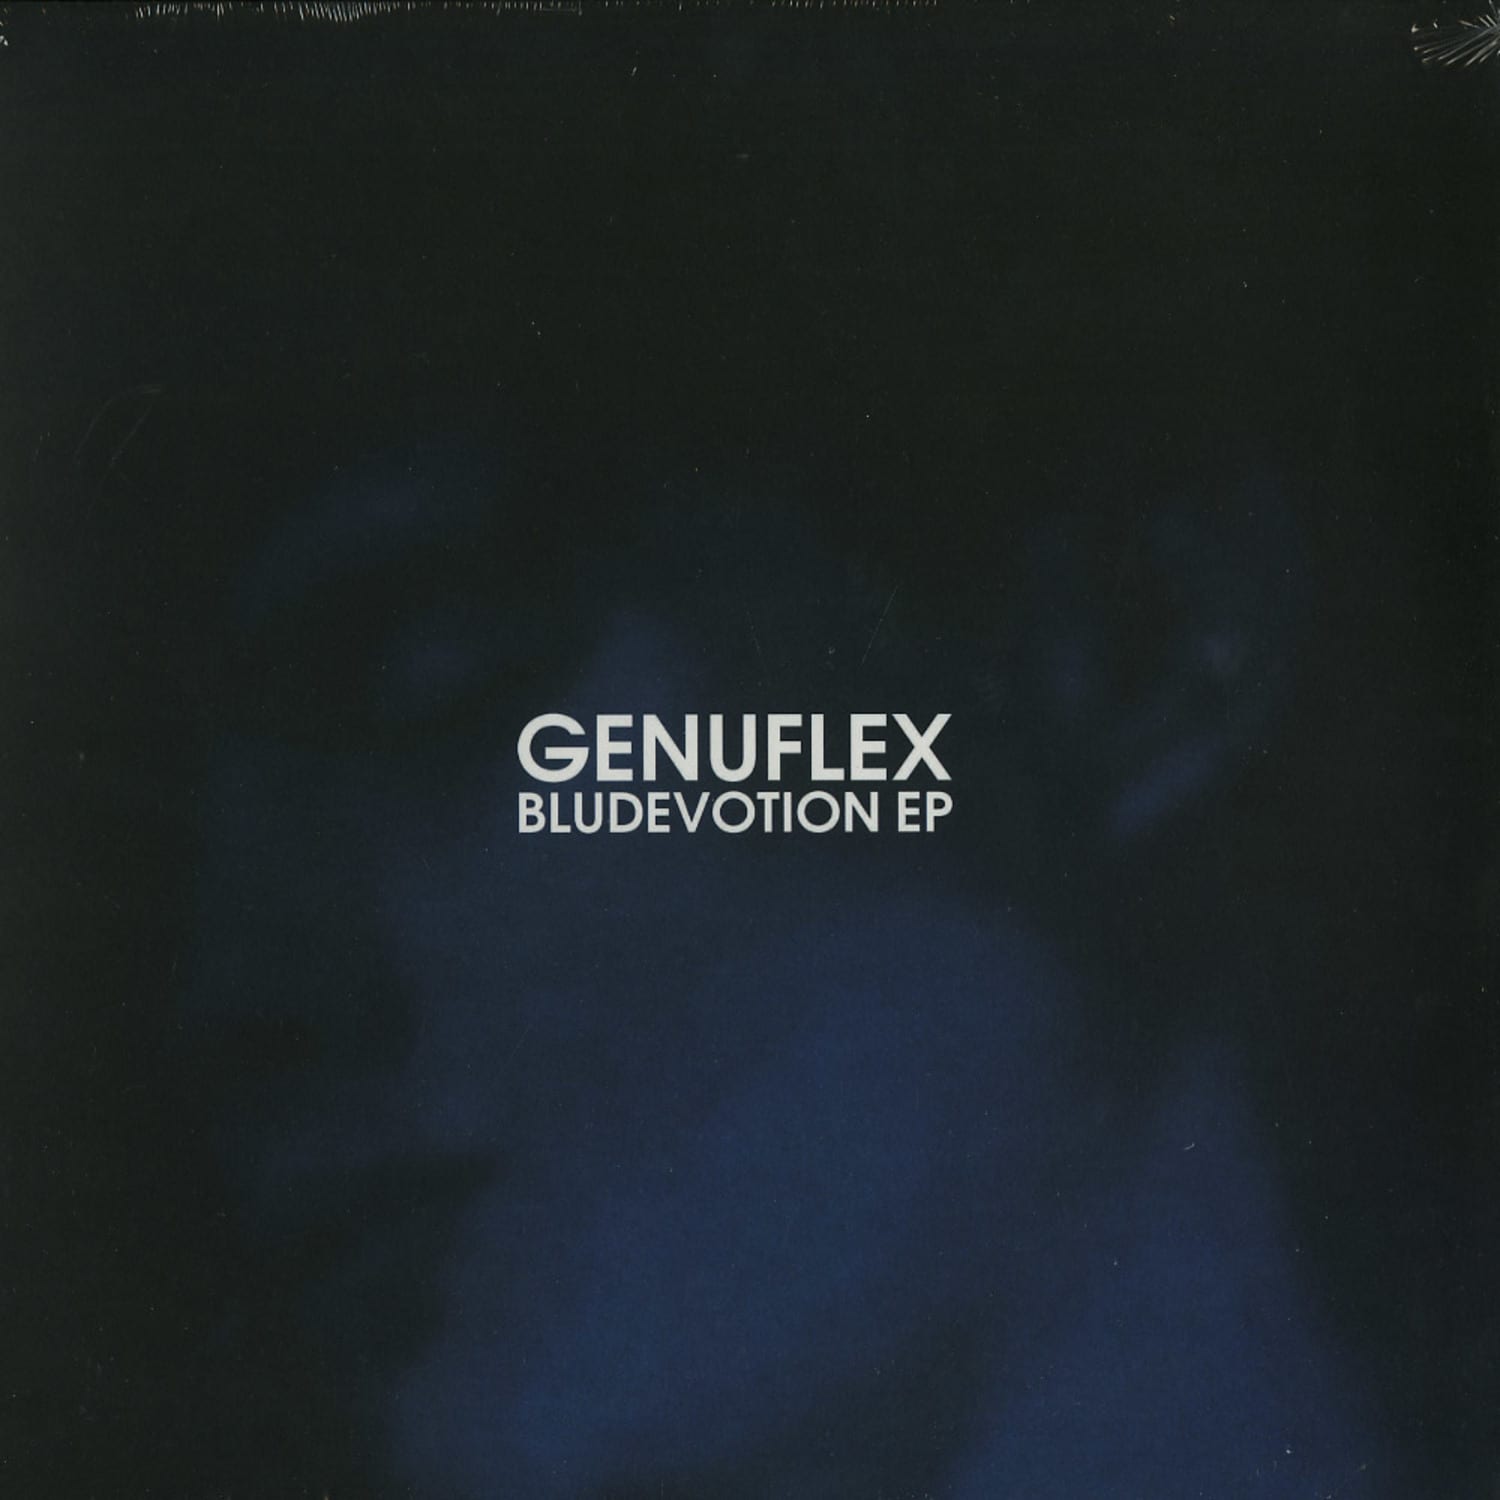 Genuflex - BLUDEVOTION EP